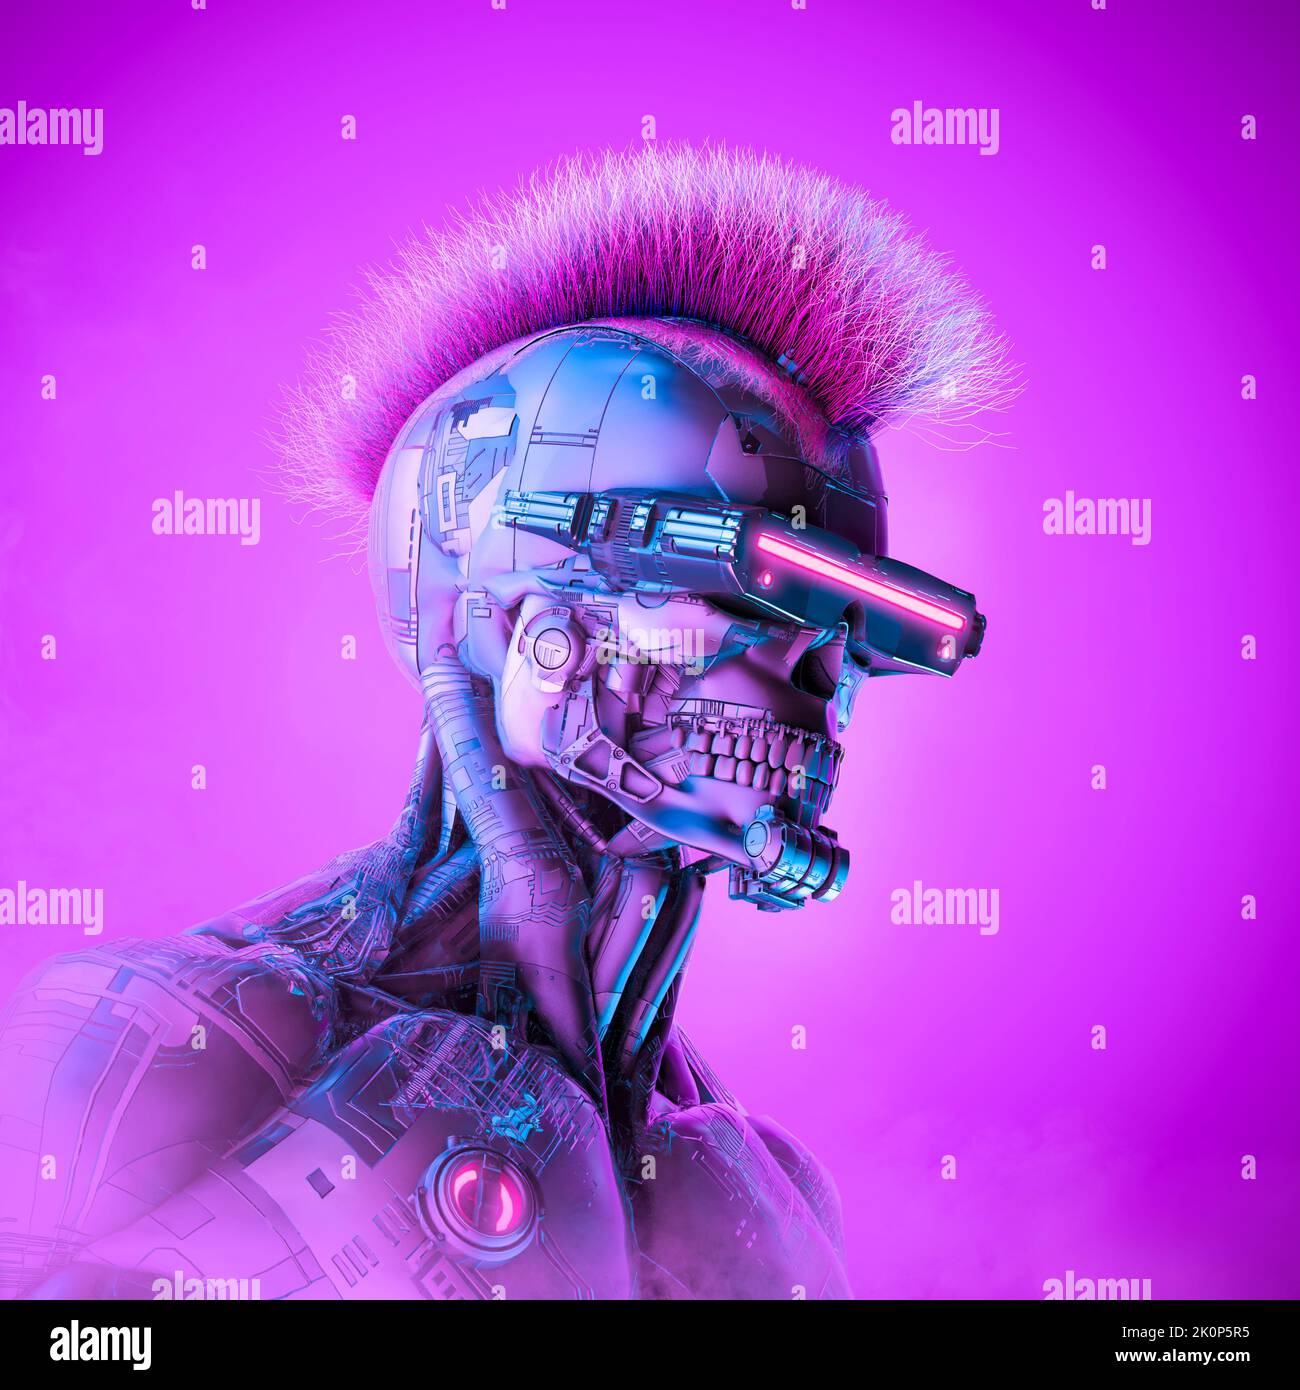 Cyberpunk Roboter krimineller Hacker - 3D Illustration von Science Fiction Schädel konfrontiert Cyborg mit Mohawk Haar Stockfoto